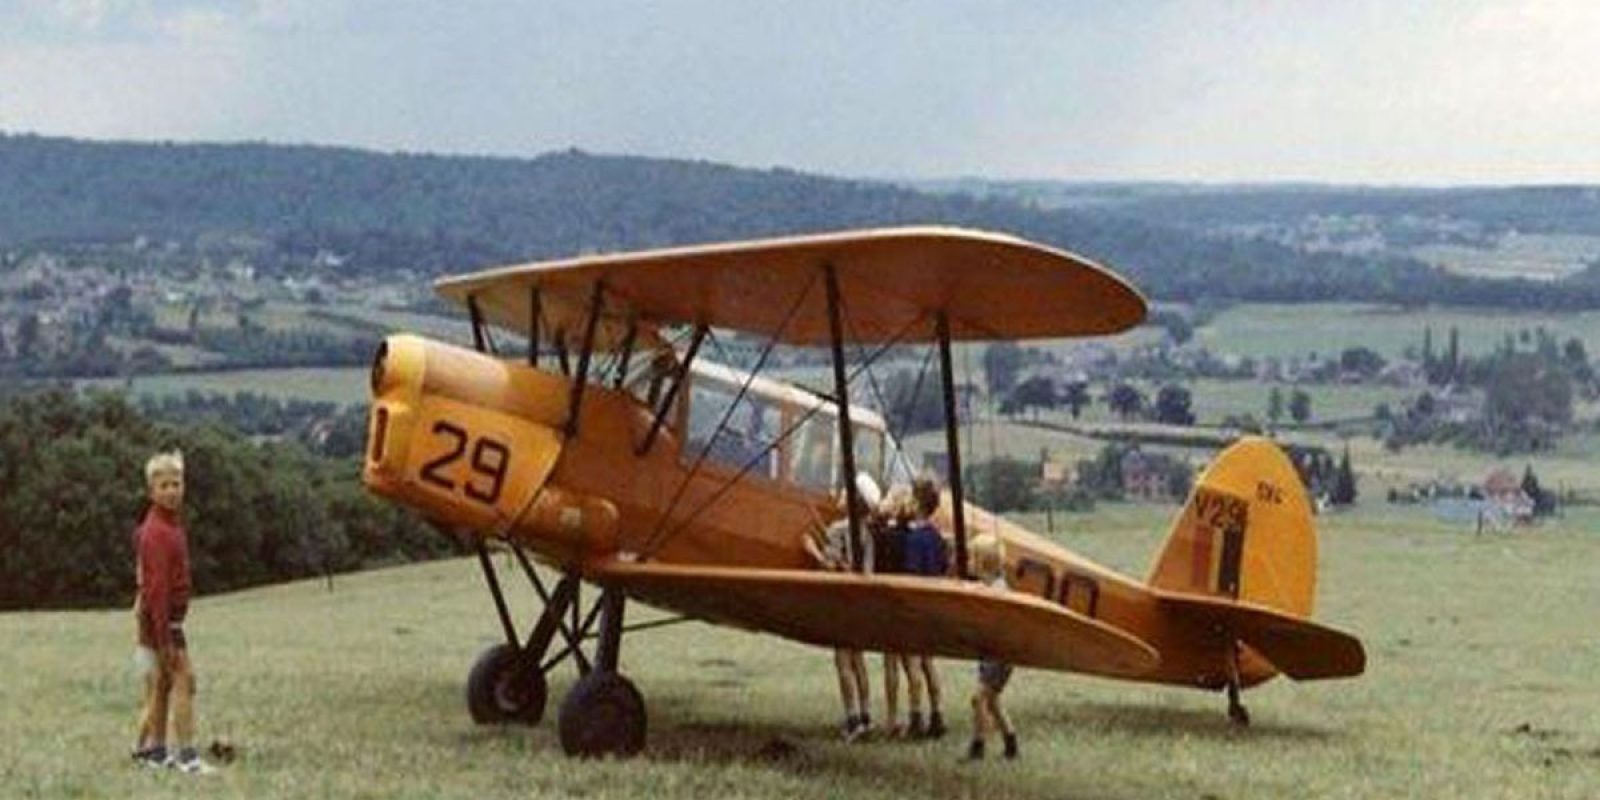 Le V29 après son atterrissage forcé à Faulx-les-Tombes le 17 août 1967 suite à la perte de son hélice en vol. (Via Marcel Baudot)